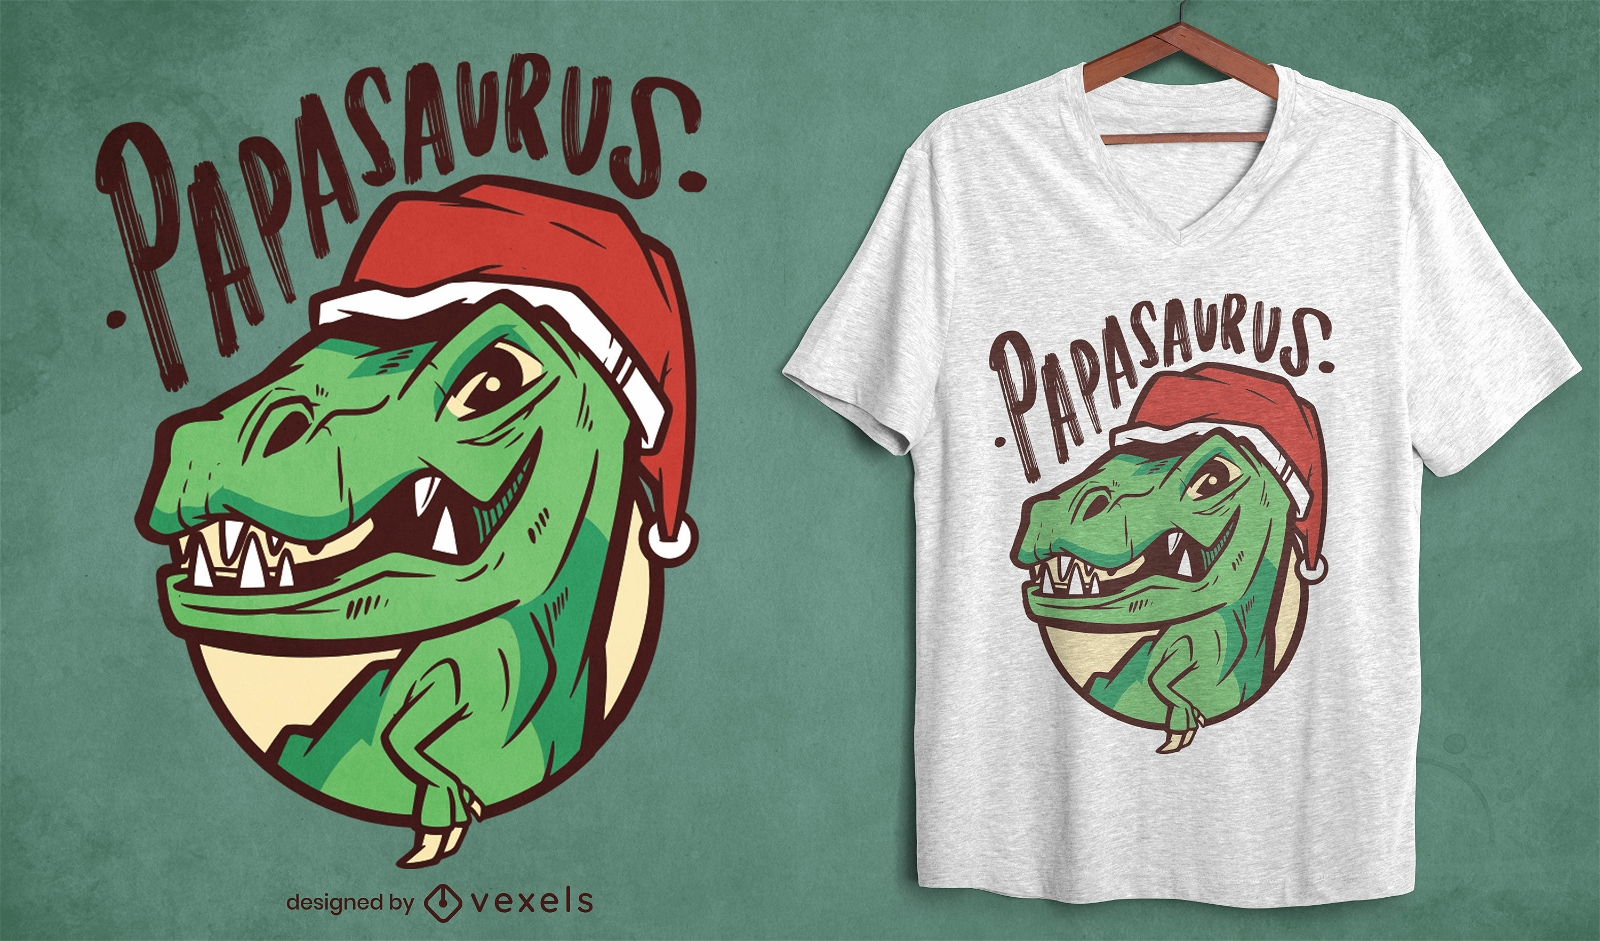 Dise?o de camiseta navide?a Papasaurus t-rex